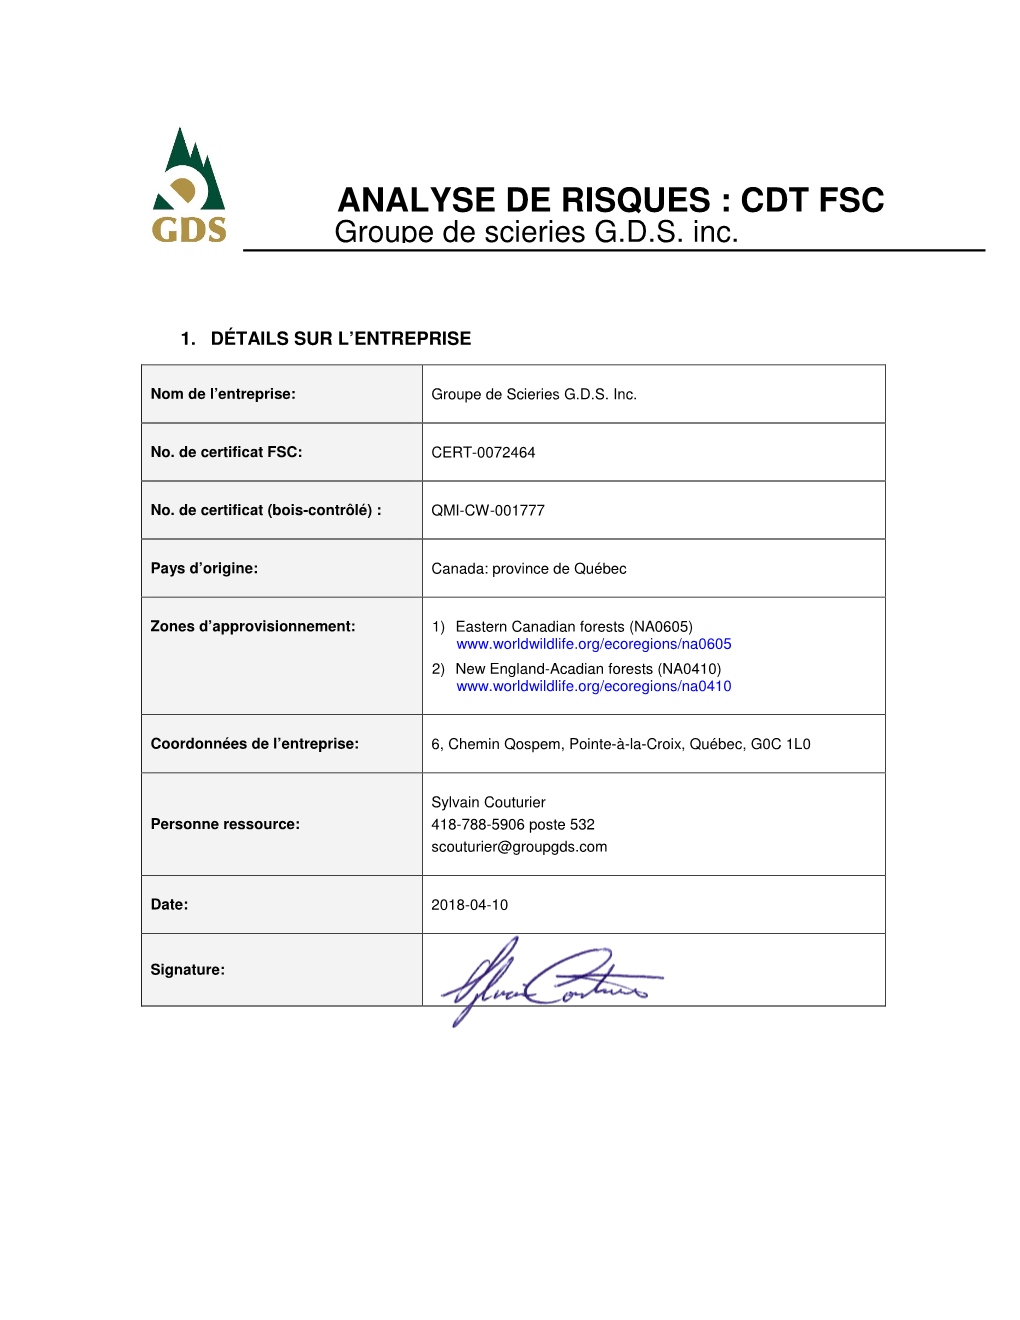 ANALYSE DE RISQUES : CDT FSC Groupe De Scieries G.D.S